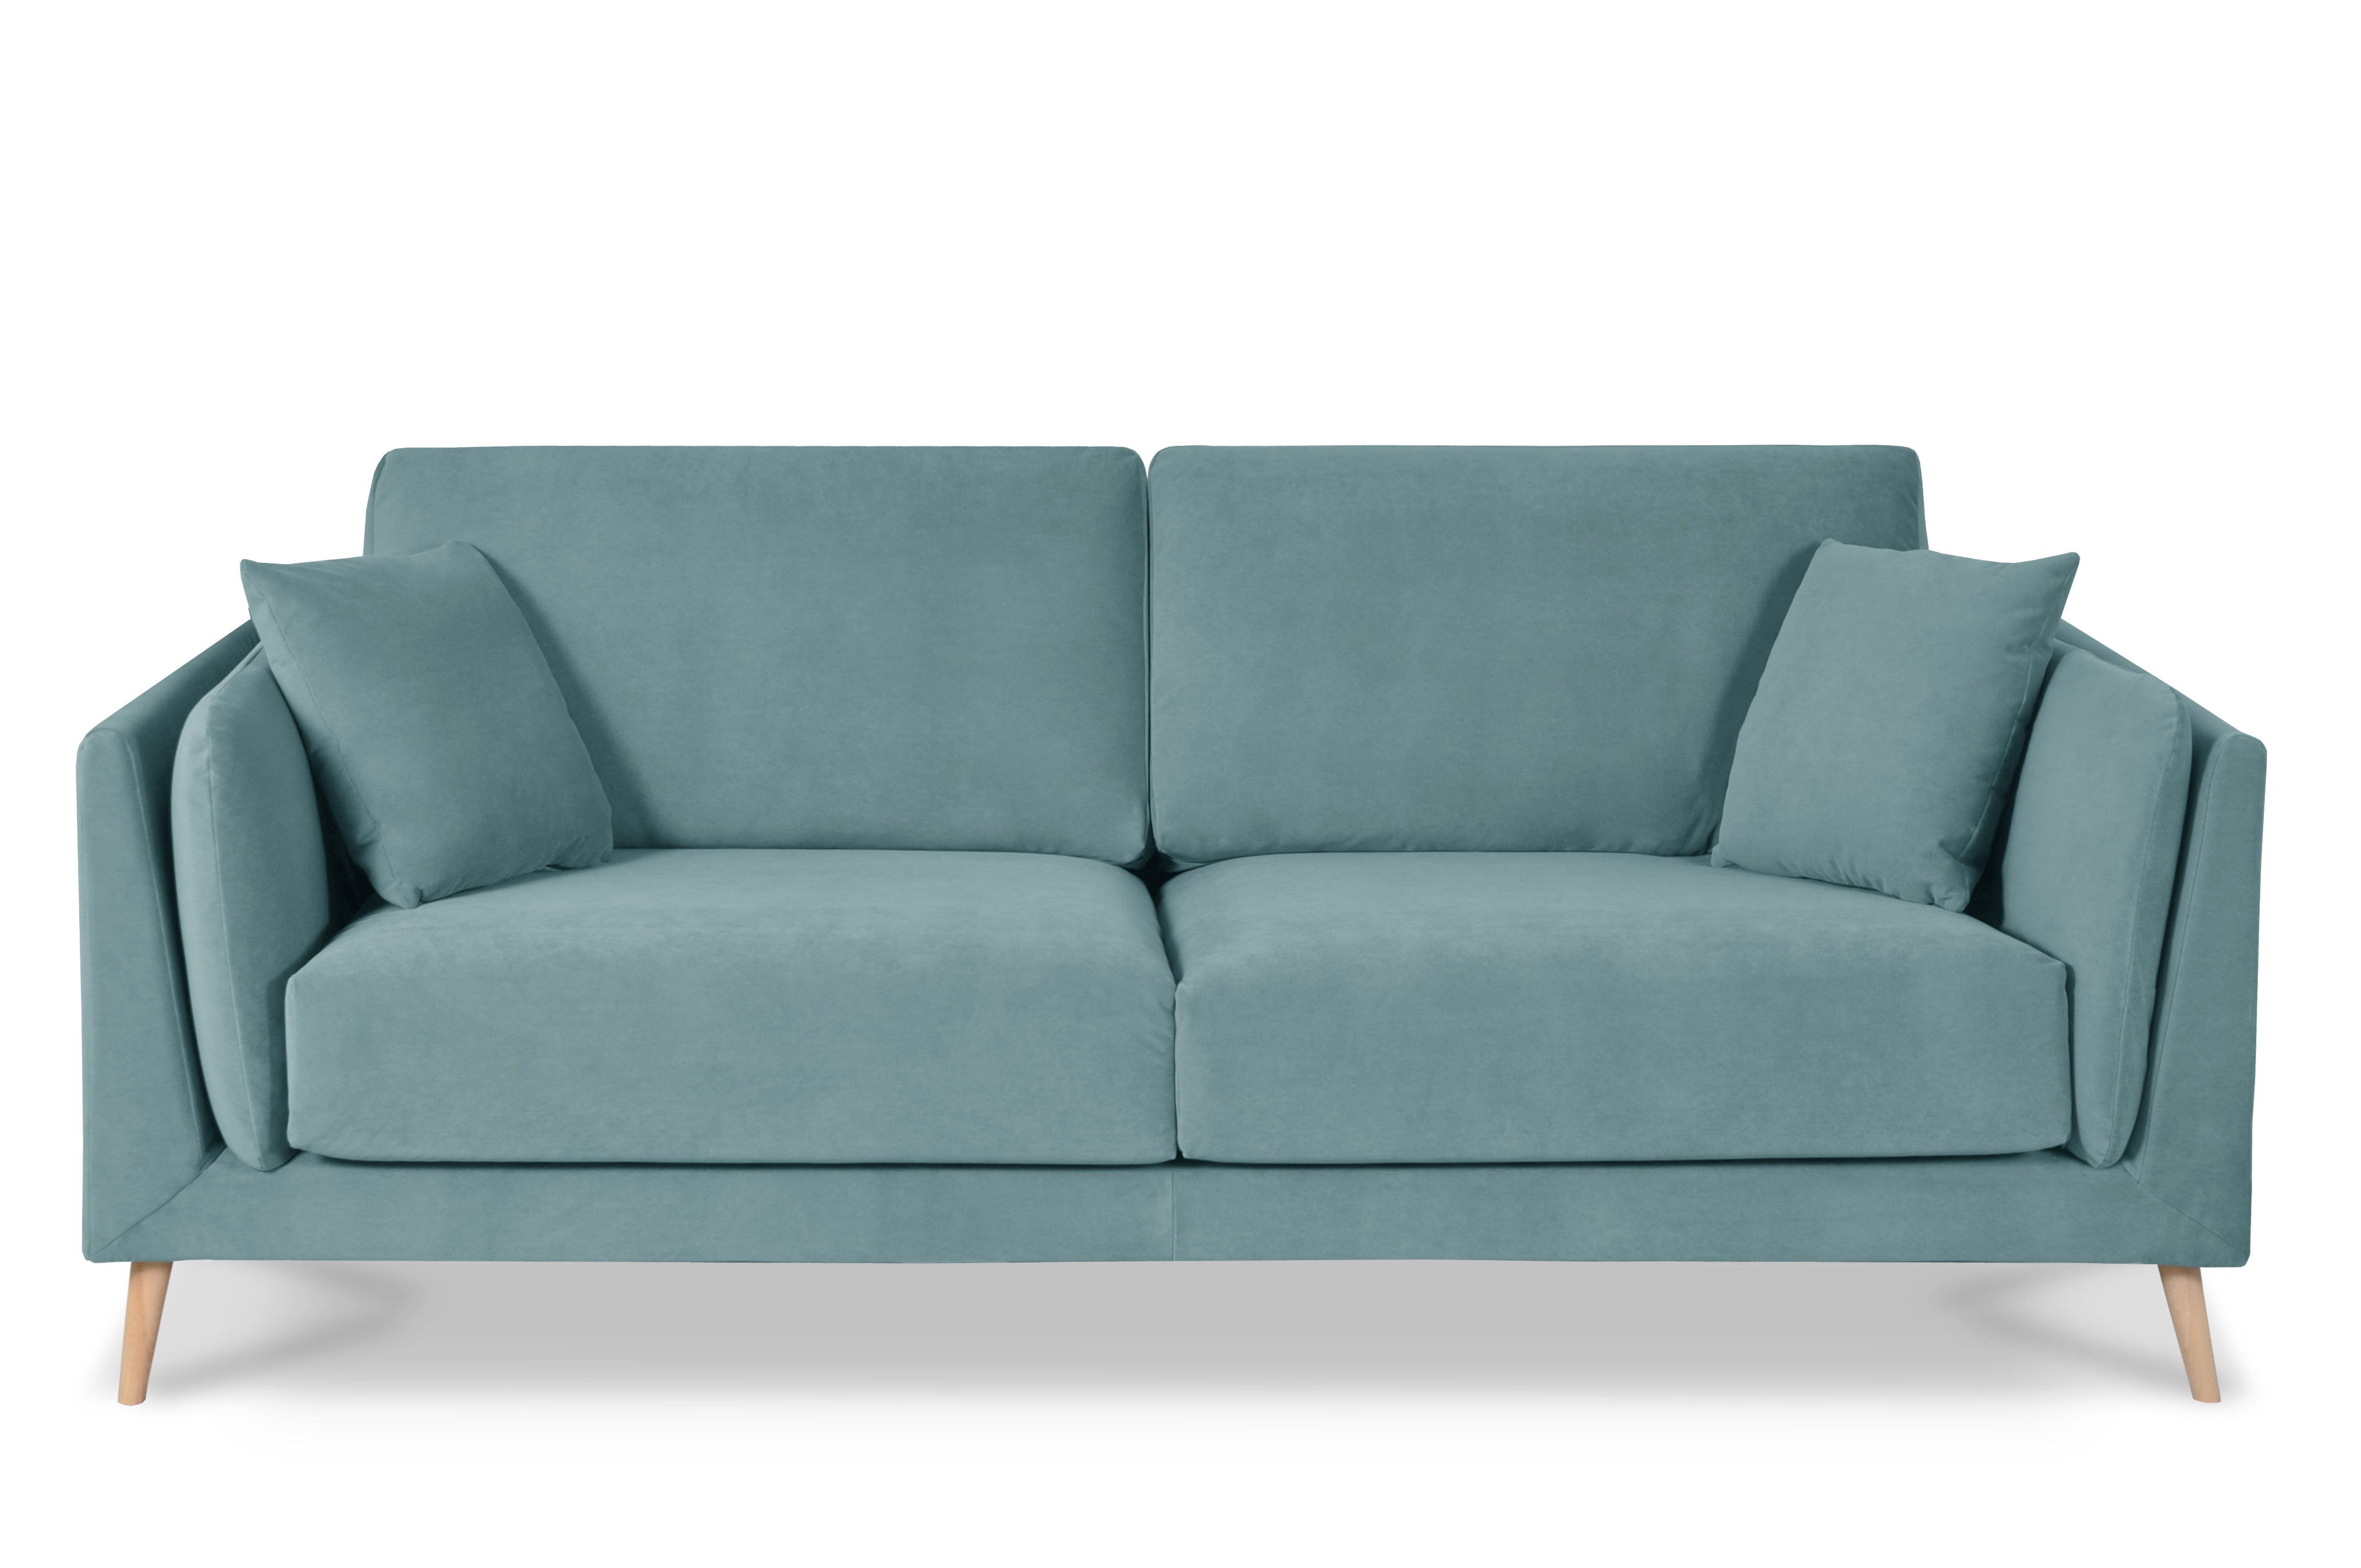 Canapé 3 places rembourrée en tissu bleu, pieds en bois, pour salon, salle à manger, chambre bureau - MAXIME 3 SEATER